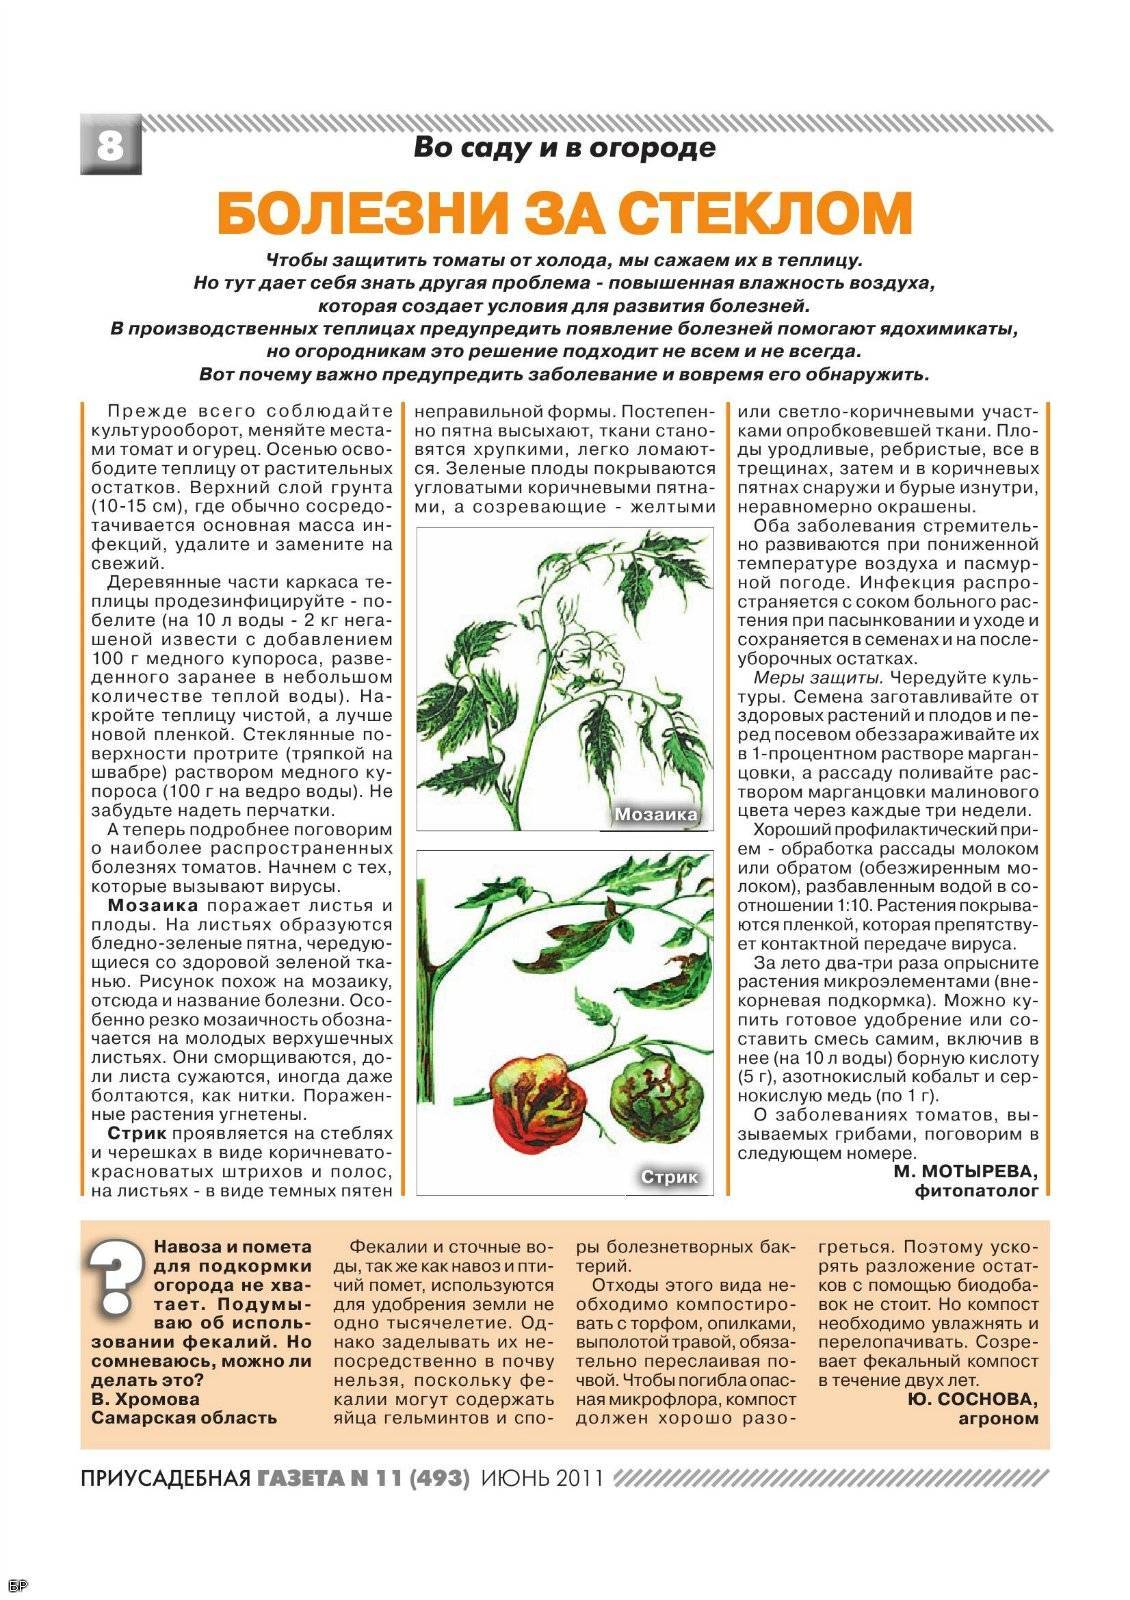 Столбур томатов – фото и их лечение, обработка препаратами и народными средствами, профилактика